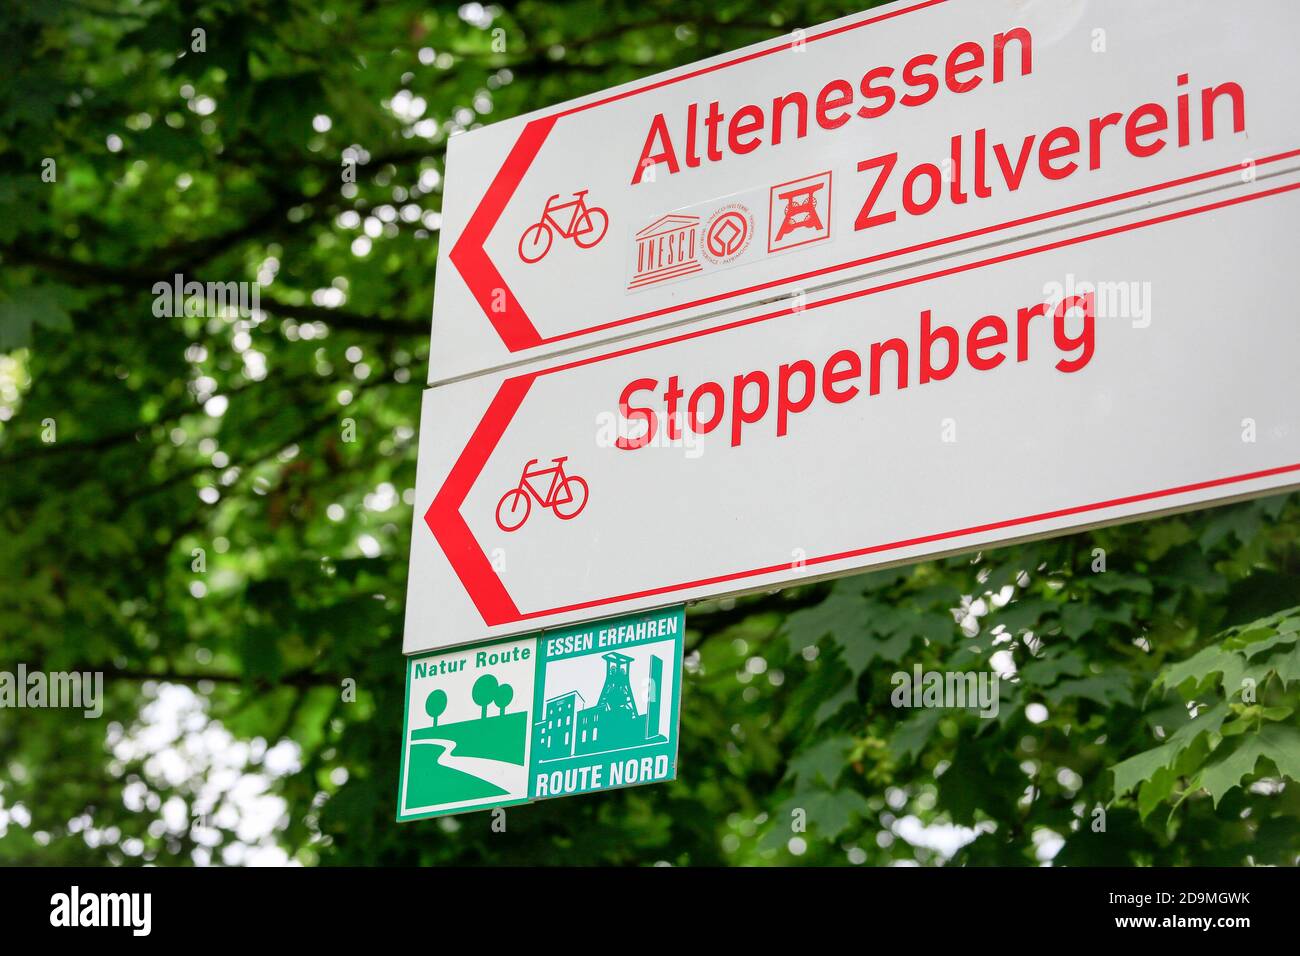 Essen, Nordrhein-Westfalen, Ruhrgebiet, Deutschland, der Hallopark im Norden Essens ist eine der ältesten Grünflächen Essens, hier gibt es auf Radwegen Richtung Zollverein anlässlich der Essen 2017 grünen Hauptstadt Europas Zeichen. Stockfoto